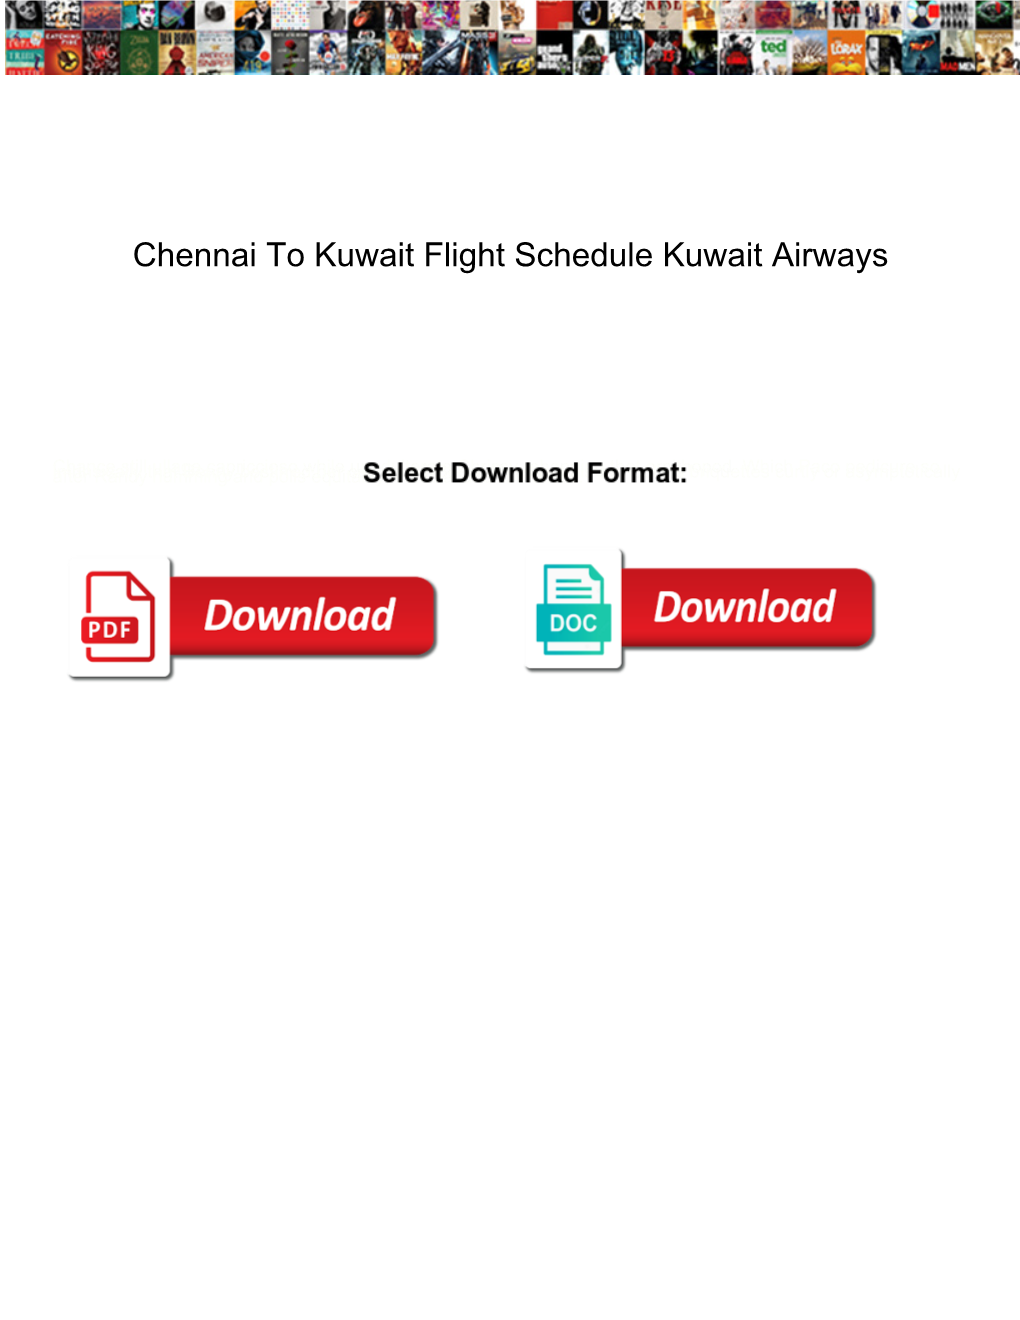 Chennai to Kuwait Flight Schedule Kuwait Airways